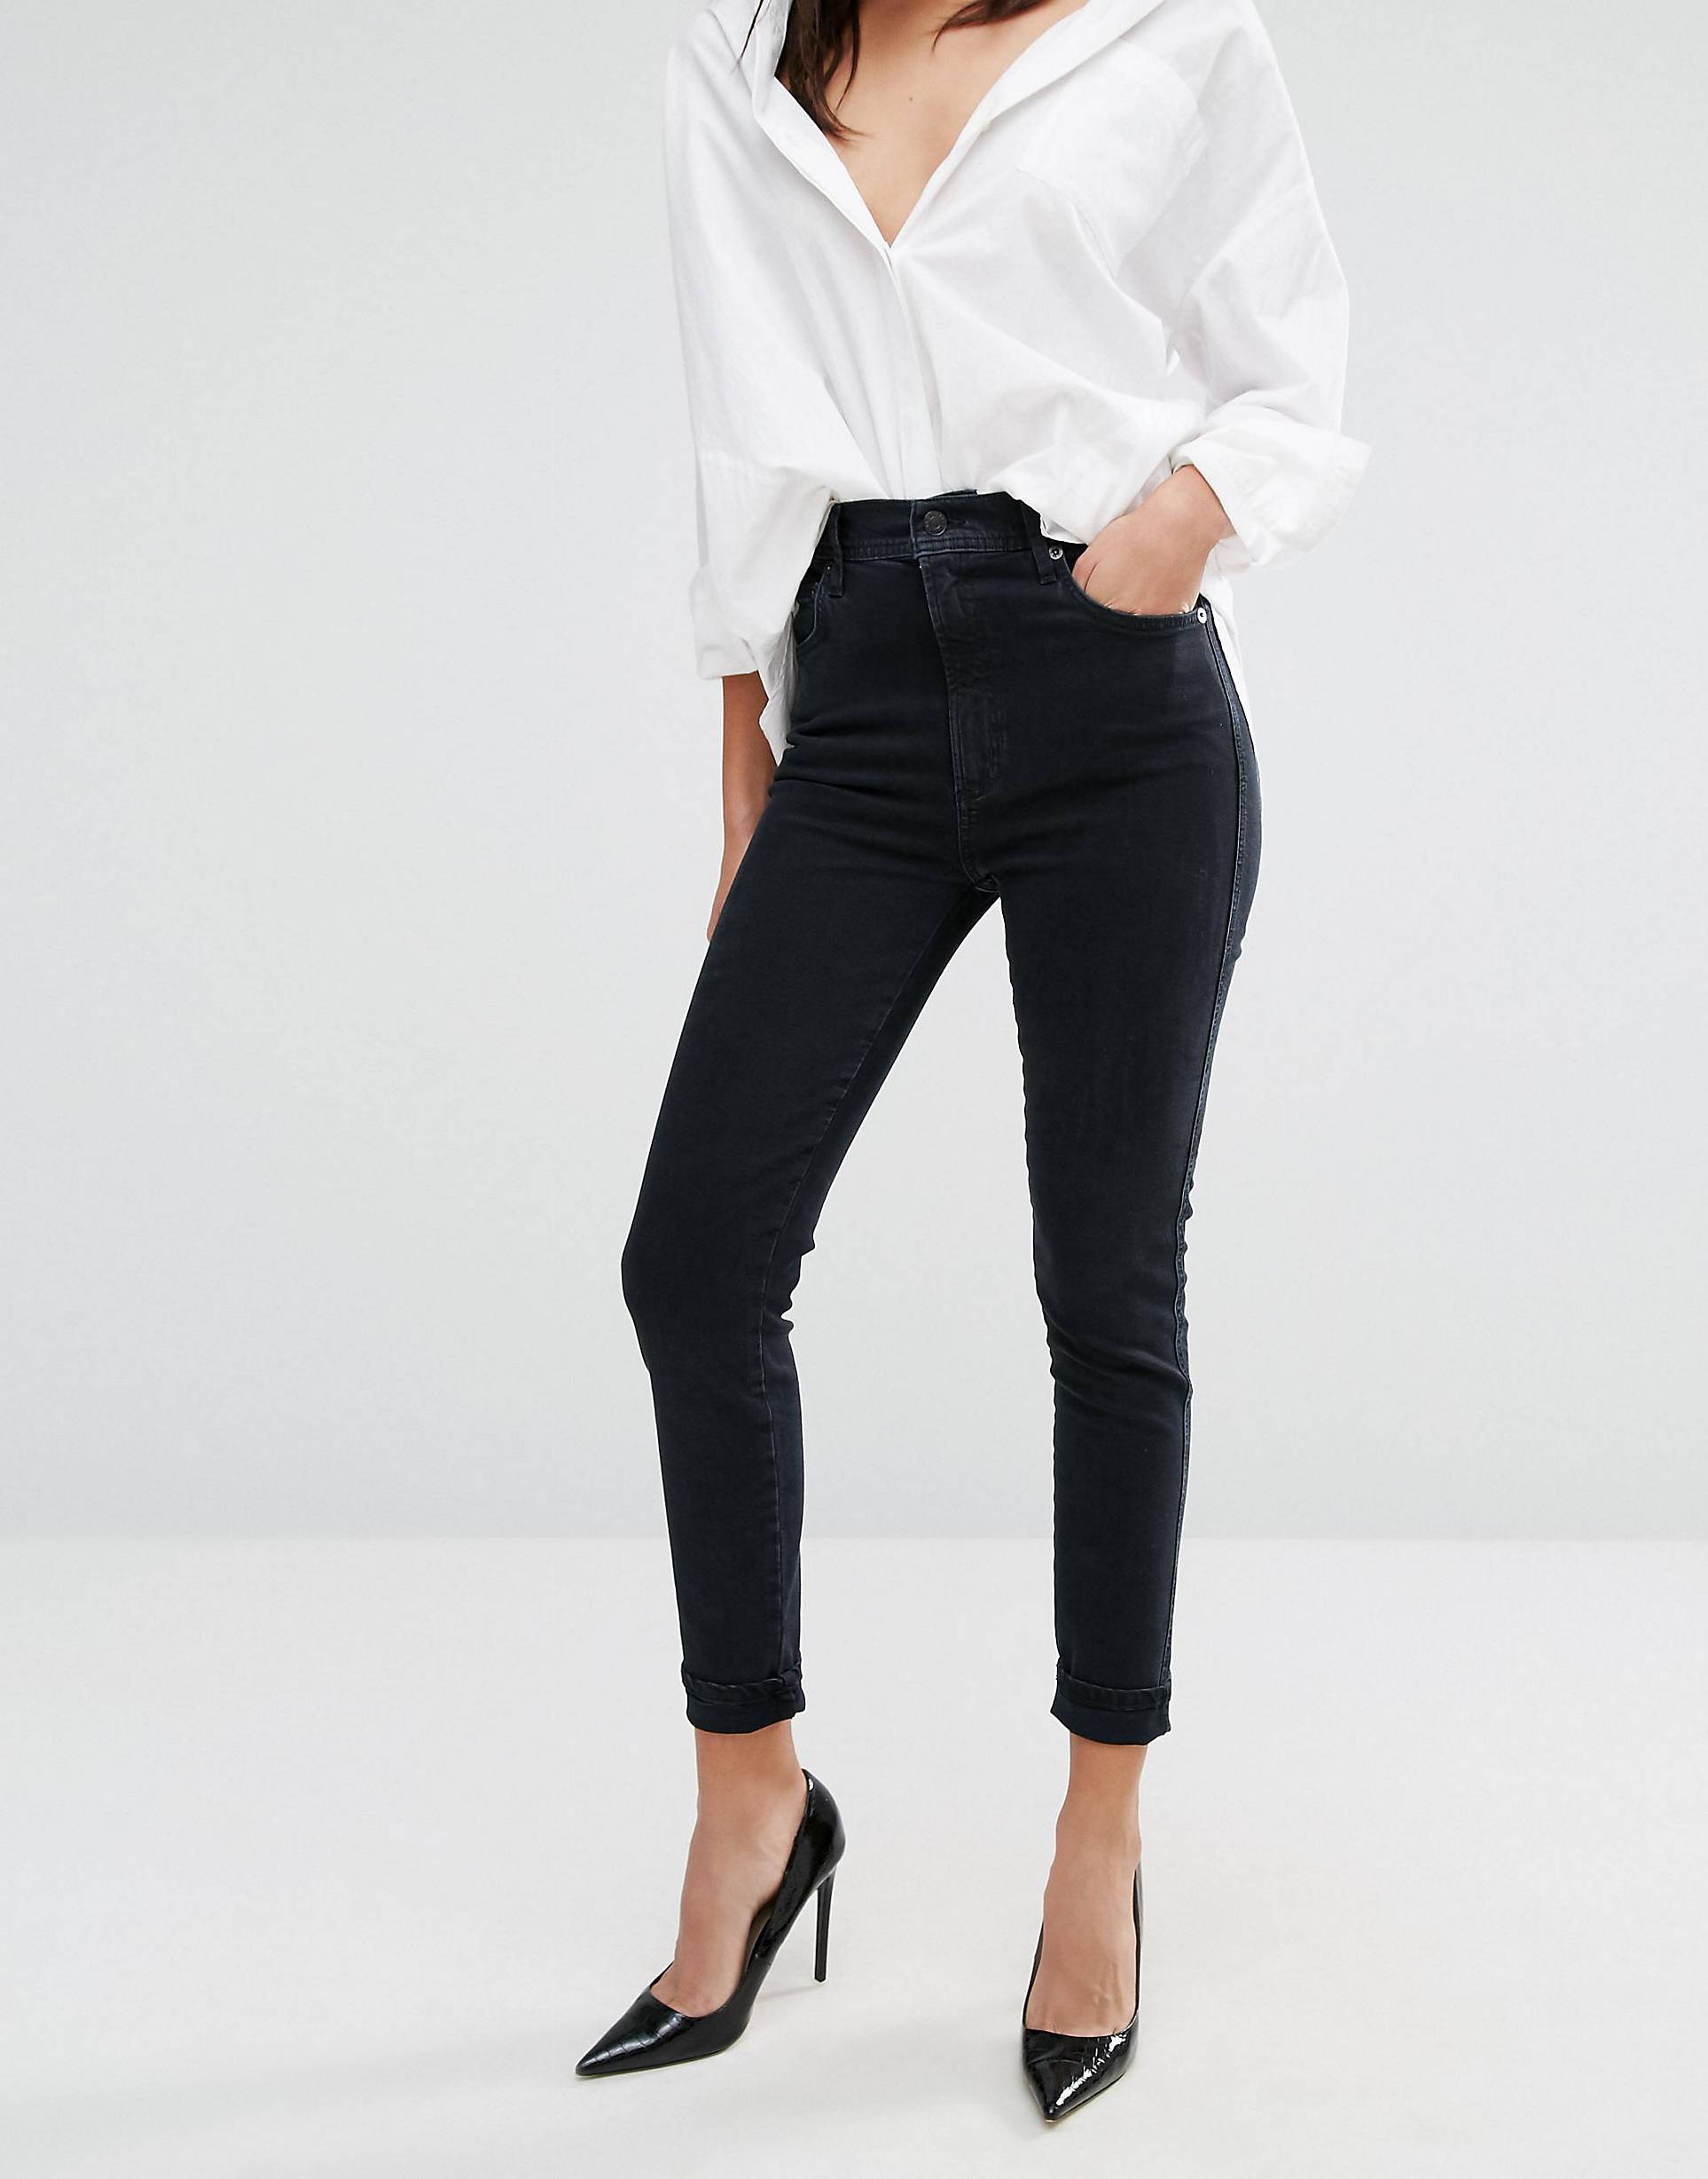 Черные брюки и блузка. Джинсы с черной блузкой. Белые джинсы с черной блузкой. Черные укороченные джинсы женские. Черная блузка и белые штаны.